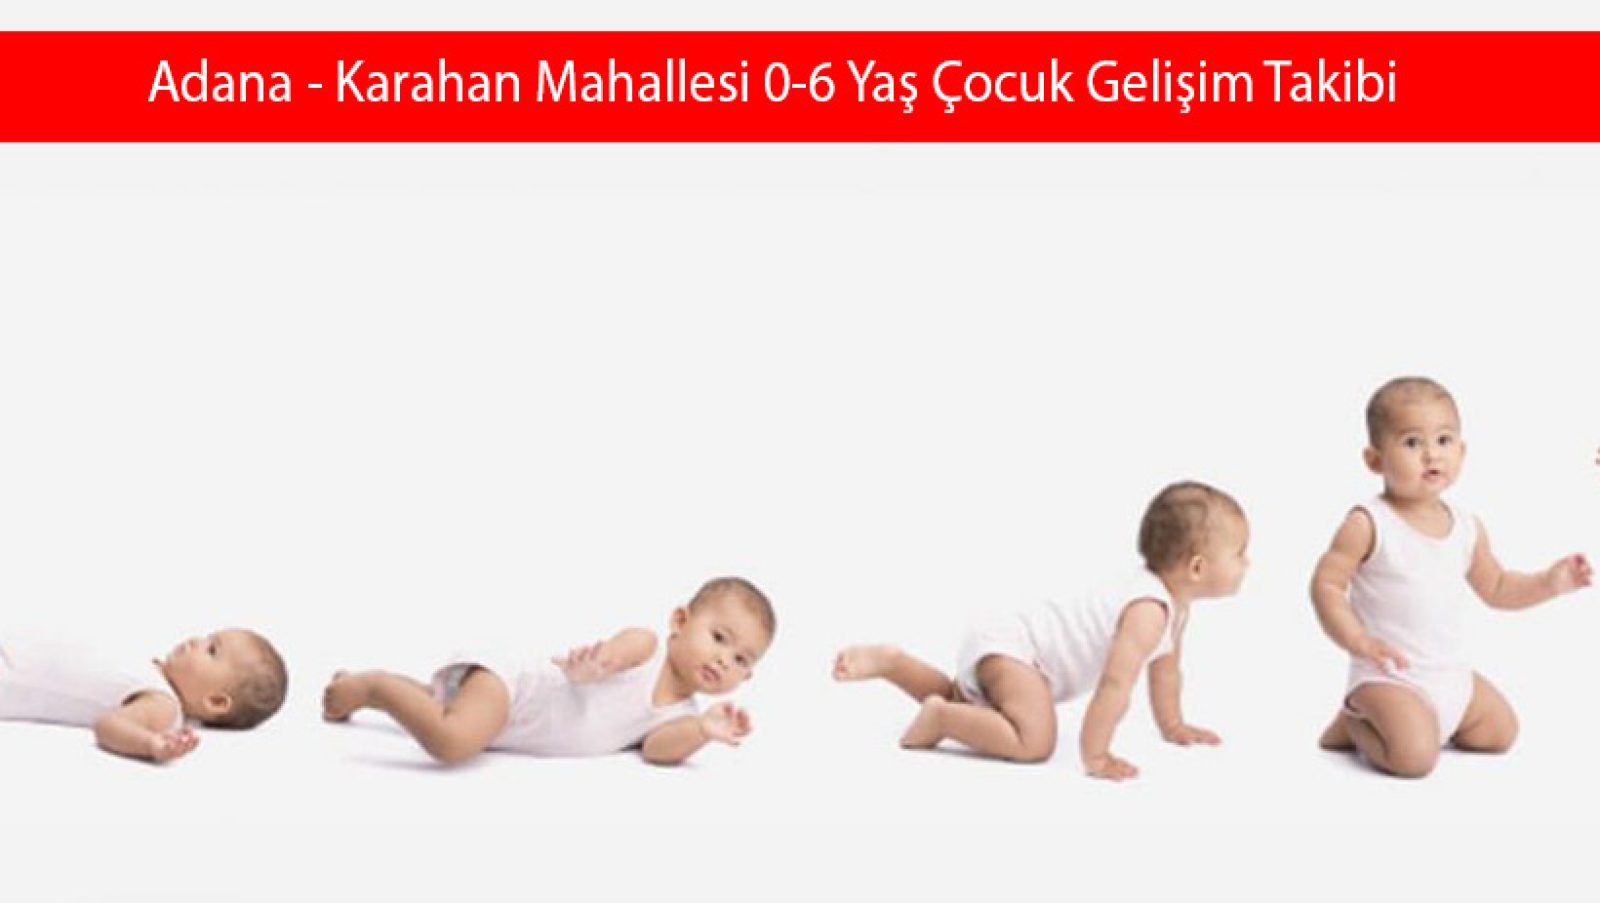 Adana - Karahan Mahallesi 0-6 Yaş Çocuk Gelişim Takibi